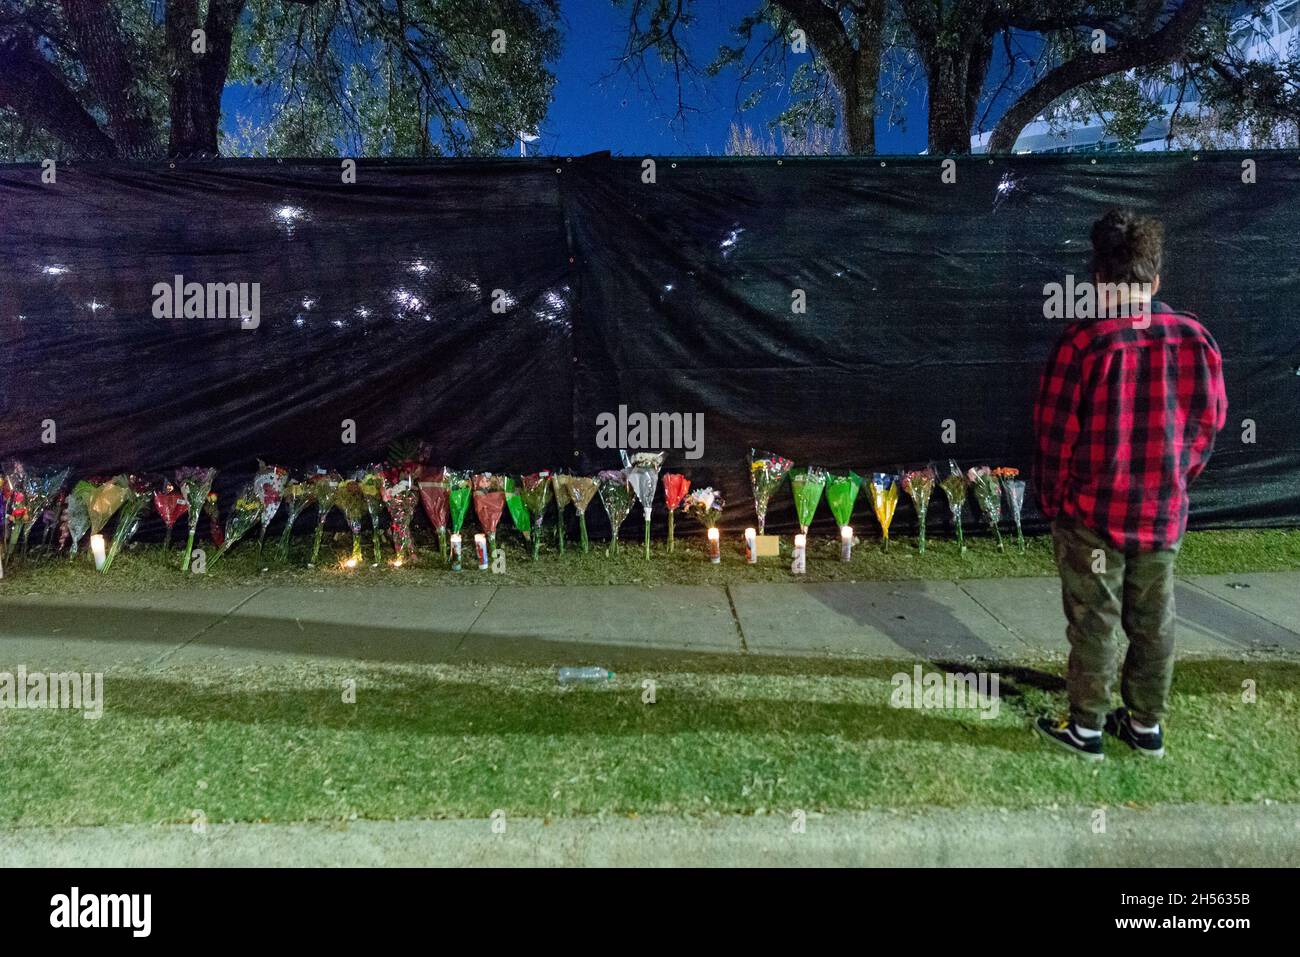 Un monument commémoratif est installé à l'extérieur du parc du festival Astroworld, à Houston, Texas, le 6 novembre 2021.Le festival de musique très attendu s'est terminé avec la mort tragique de huit jeunes vendredi soir.(Photo de Jennifer Lake/Sipa USA) Banque D'Images